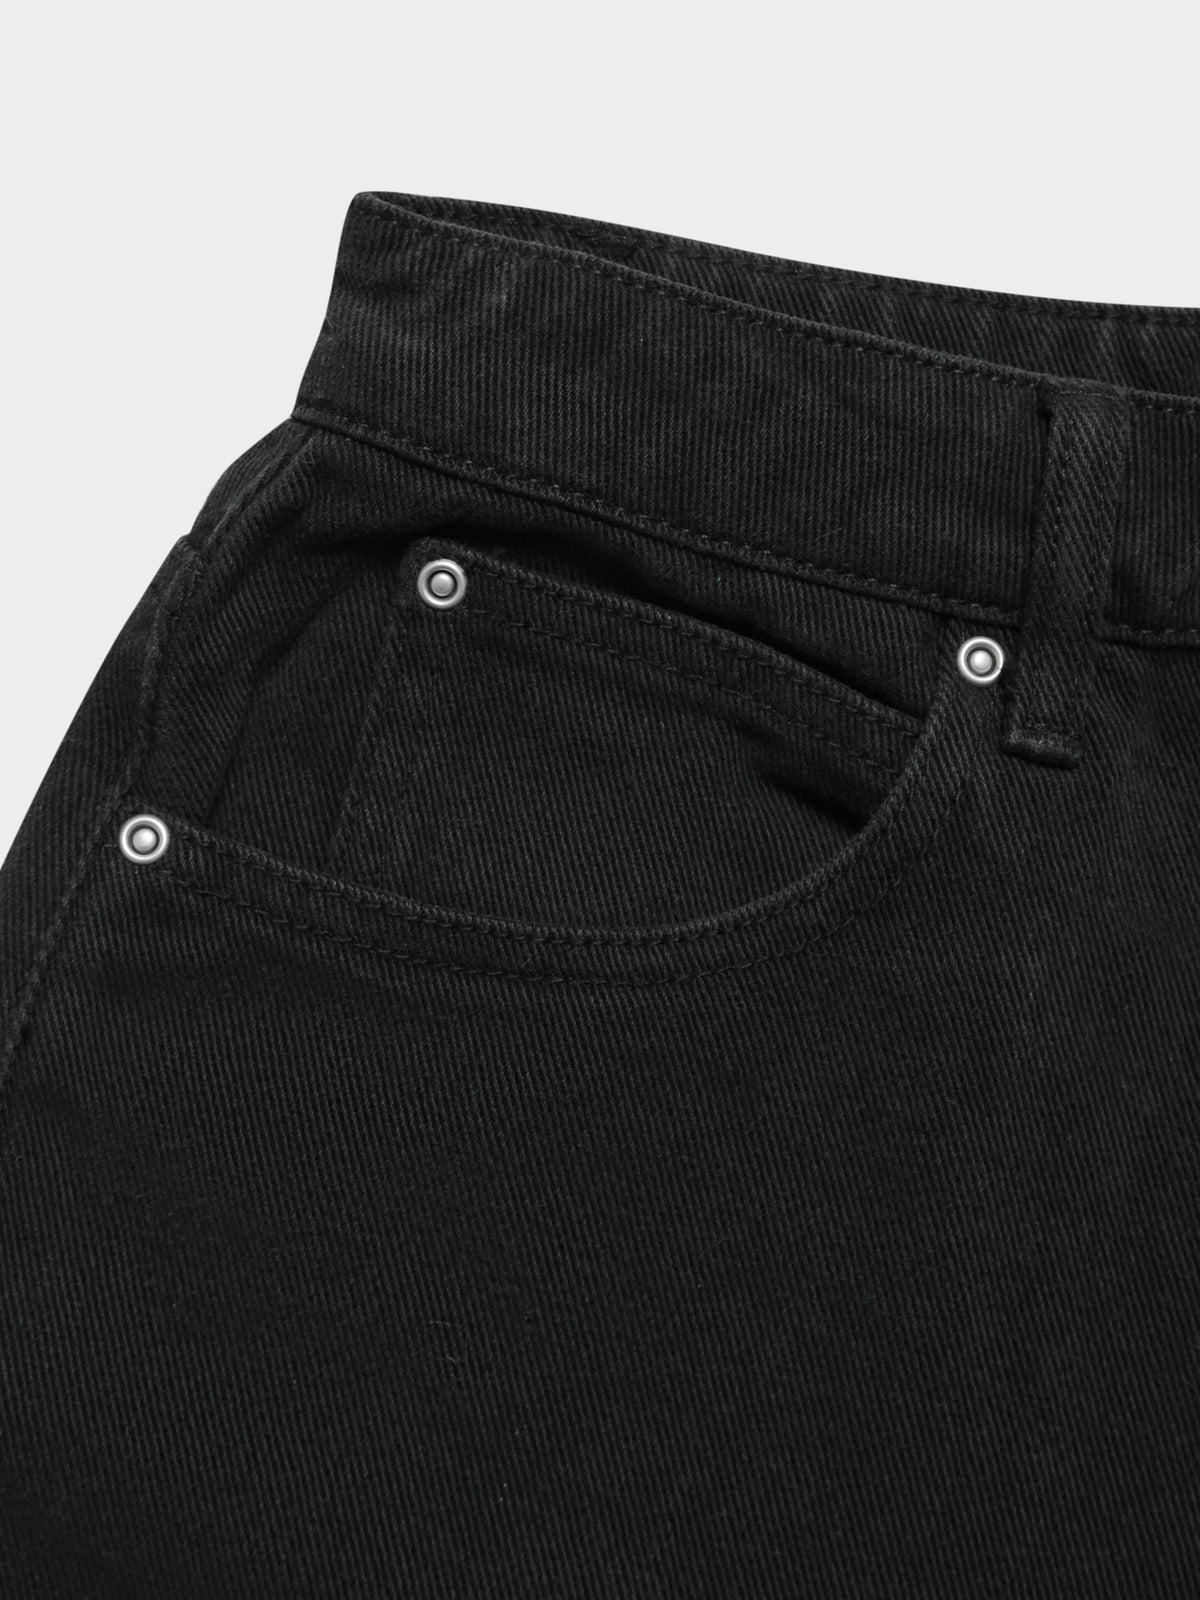 Billie Denim Shorts in Washed Black